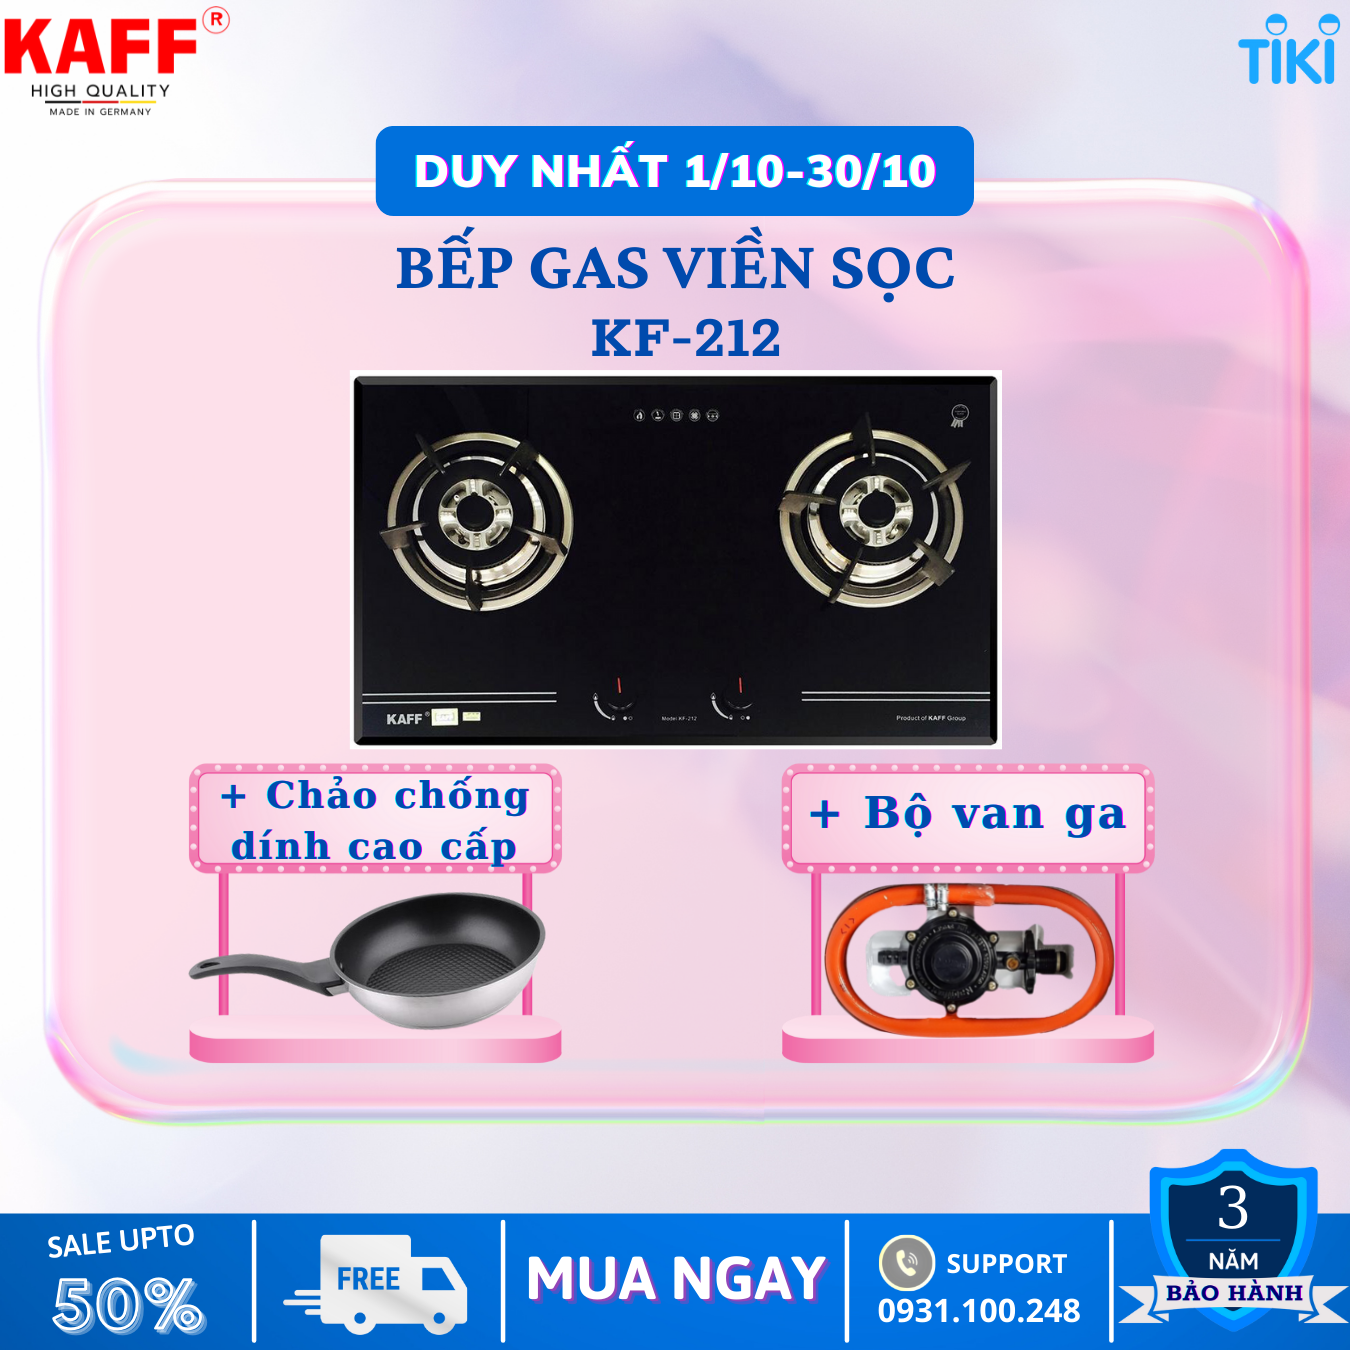 Bộ Bếp ga âm viền sọc KAFF KF- 212 bao gồm: Bếp ga + chảo chống dính cao cấp + bộ van ga - Hàng chính hãng